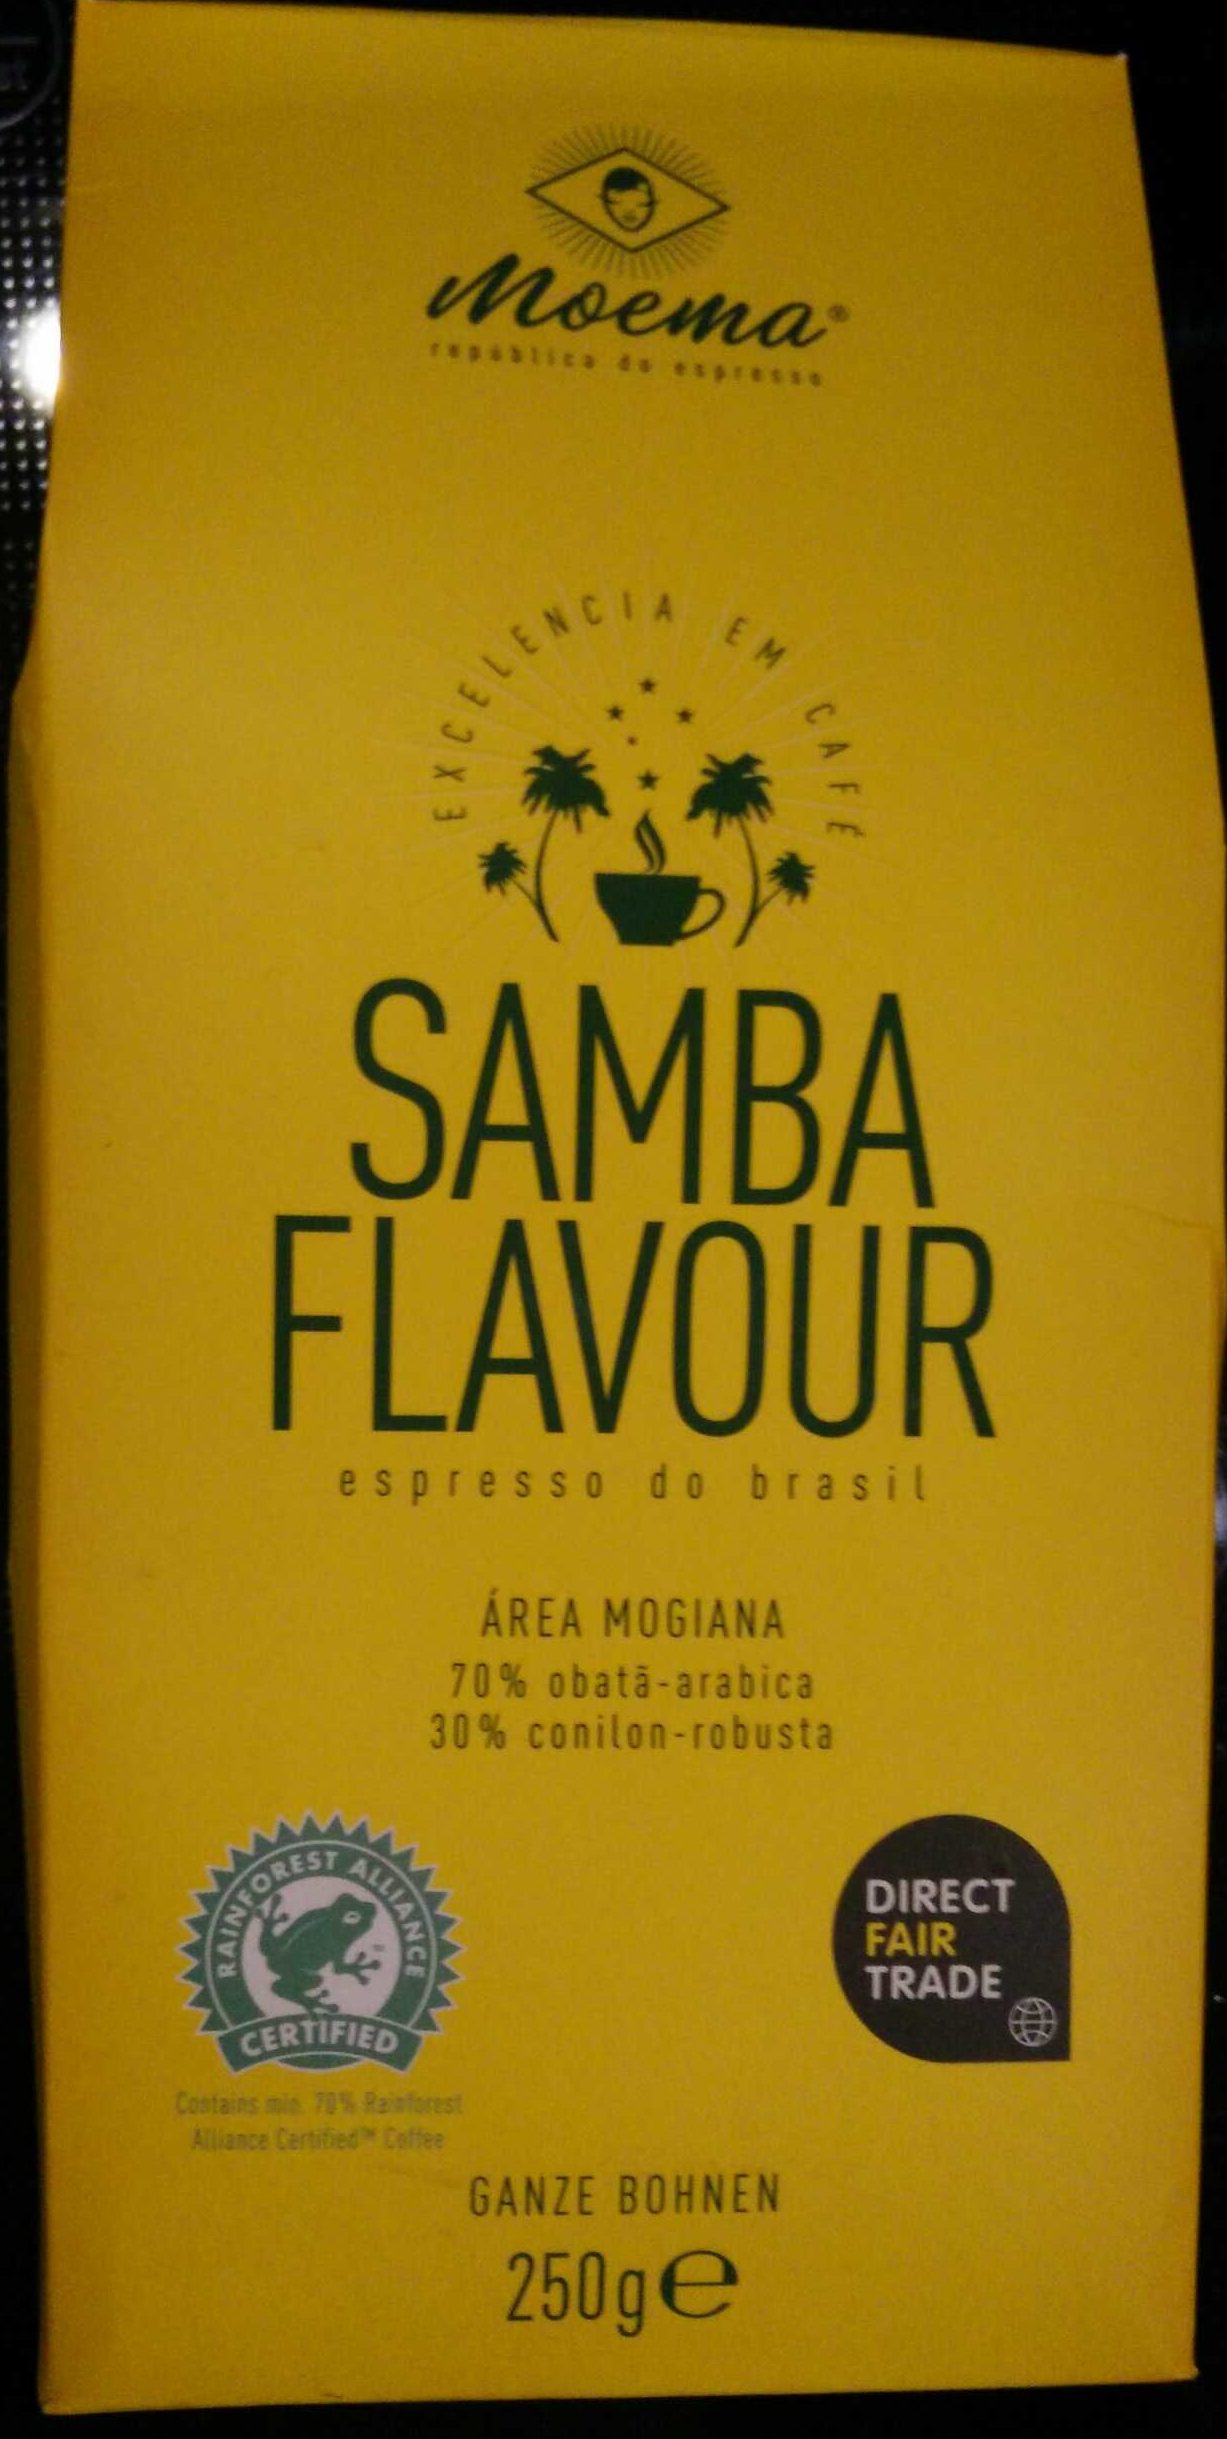 Samba Flavour espresso do brasil - Producto - de